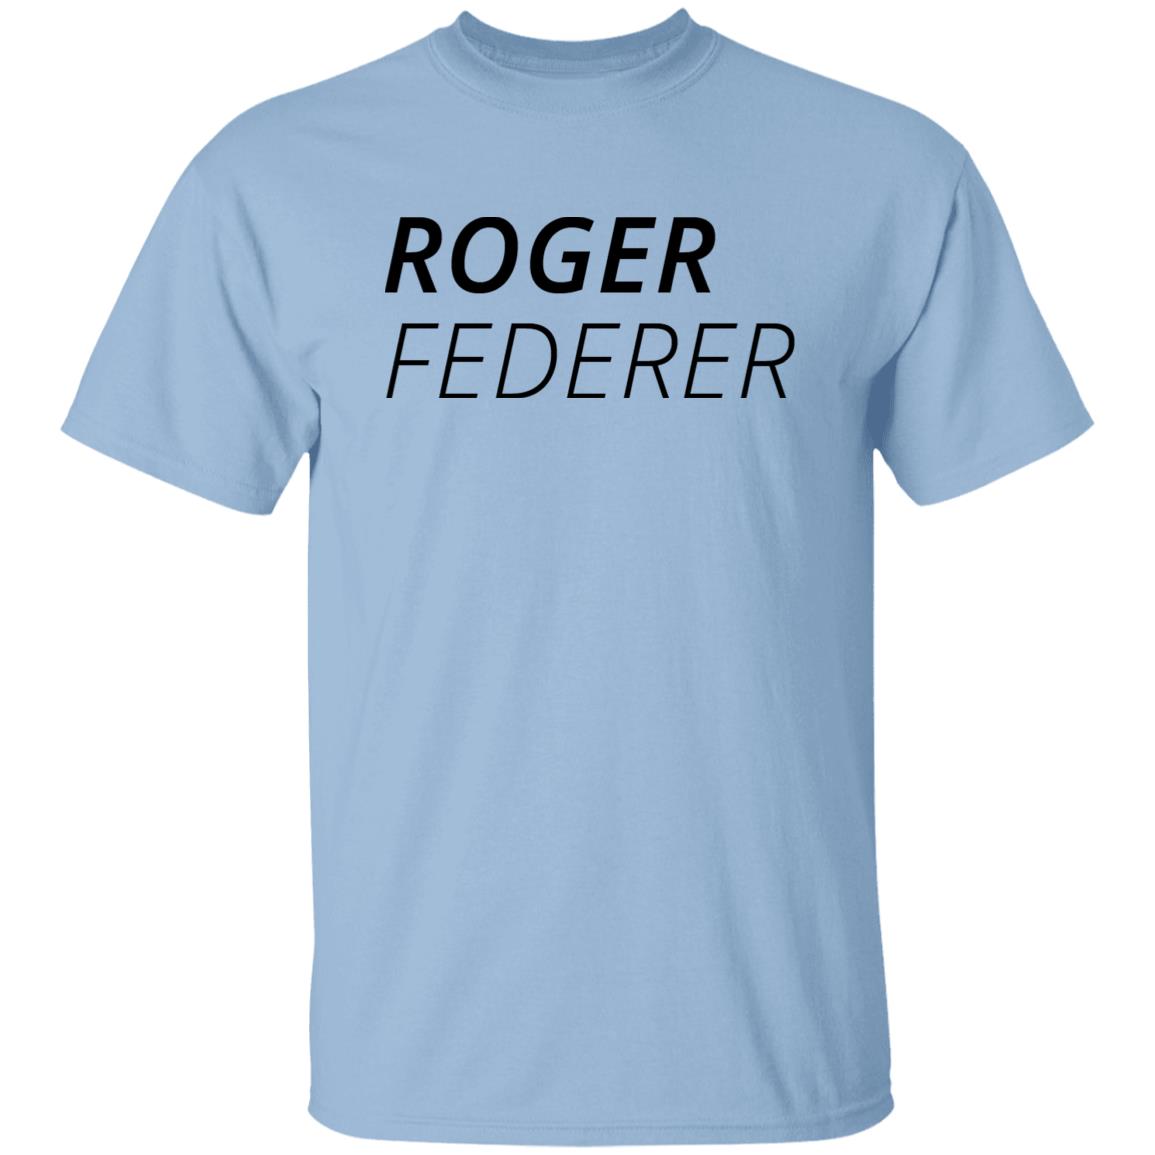 Buy Roger Federer Shirt Tshirt Porhub Lorenzo Musetti Hub